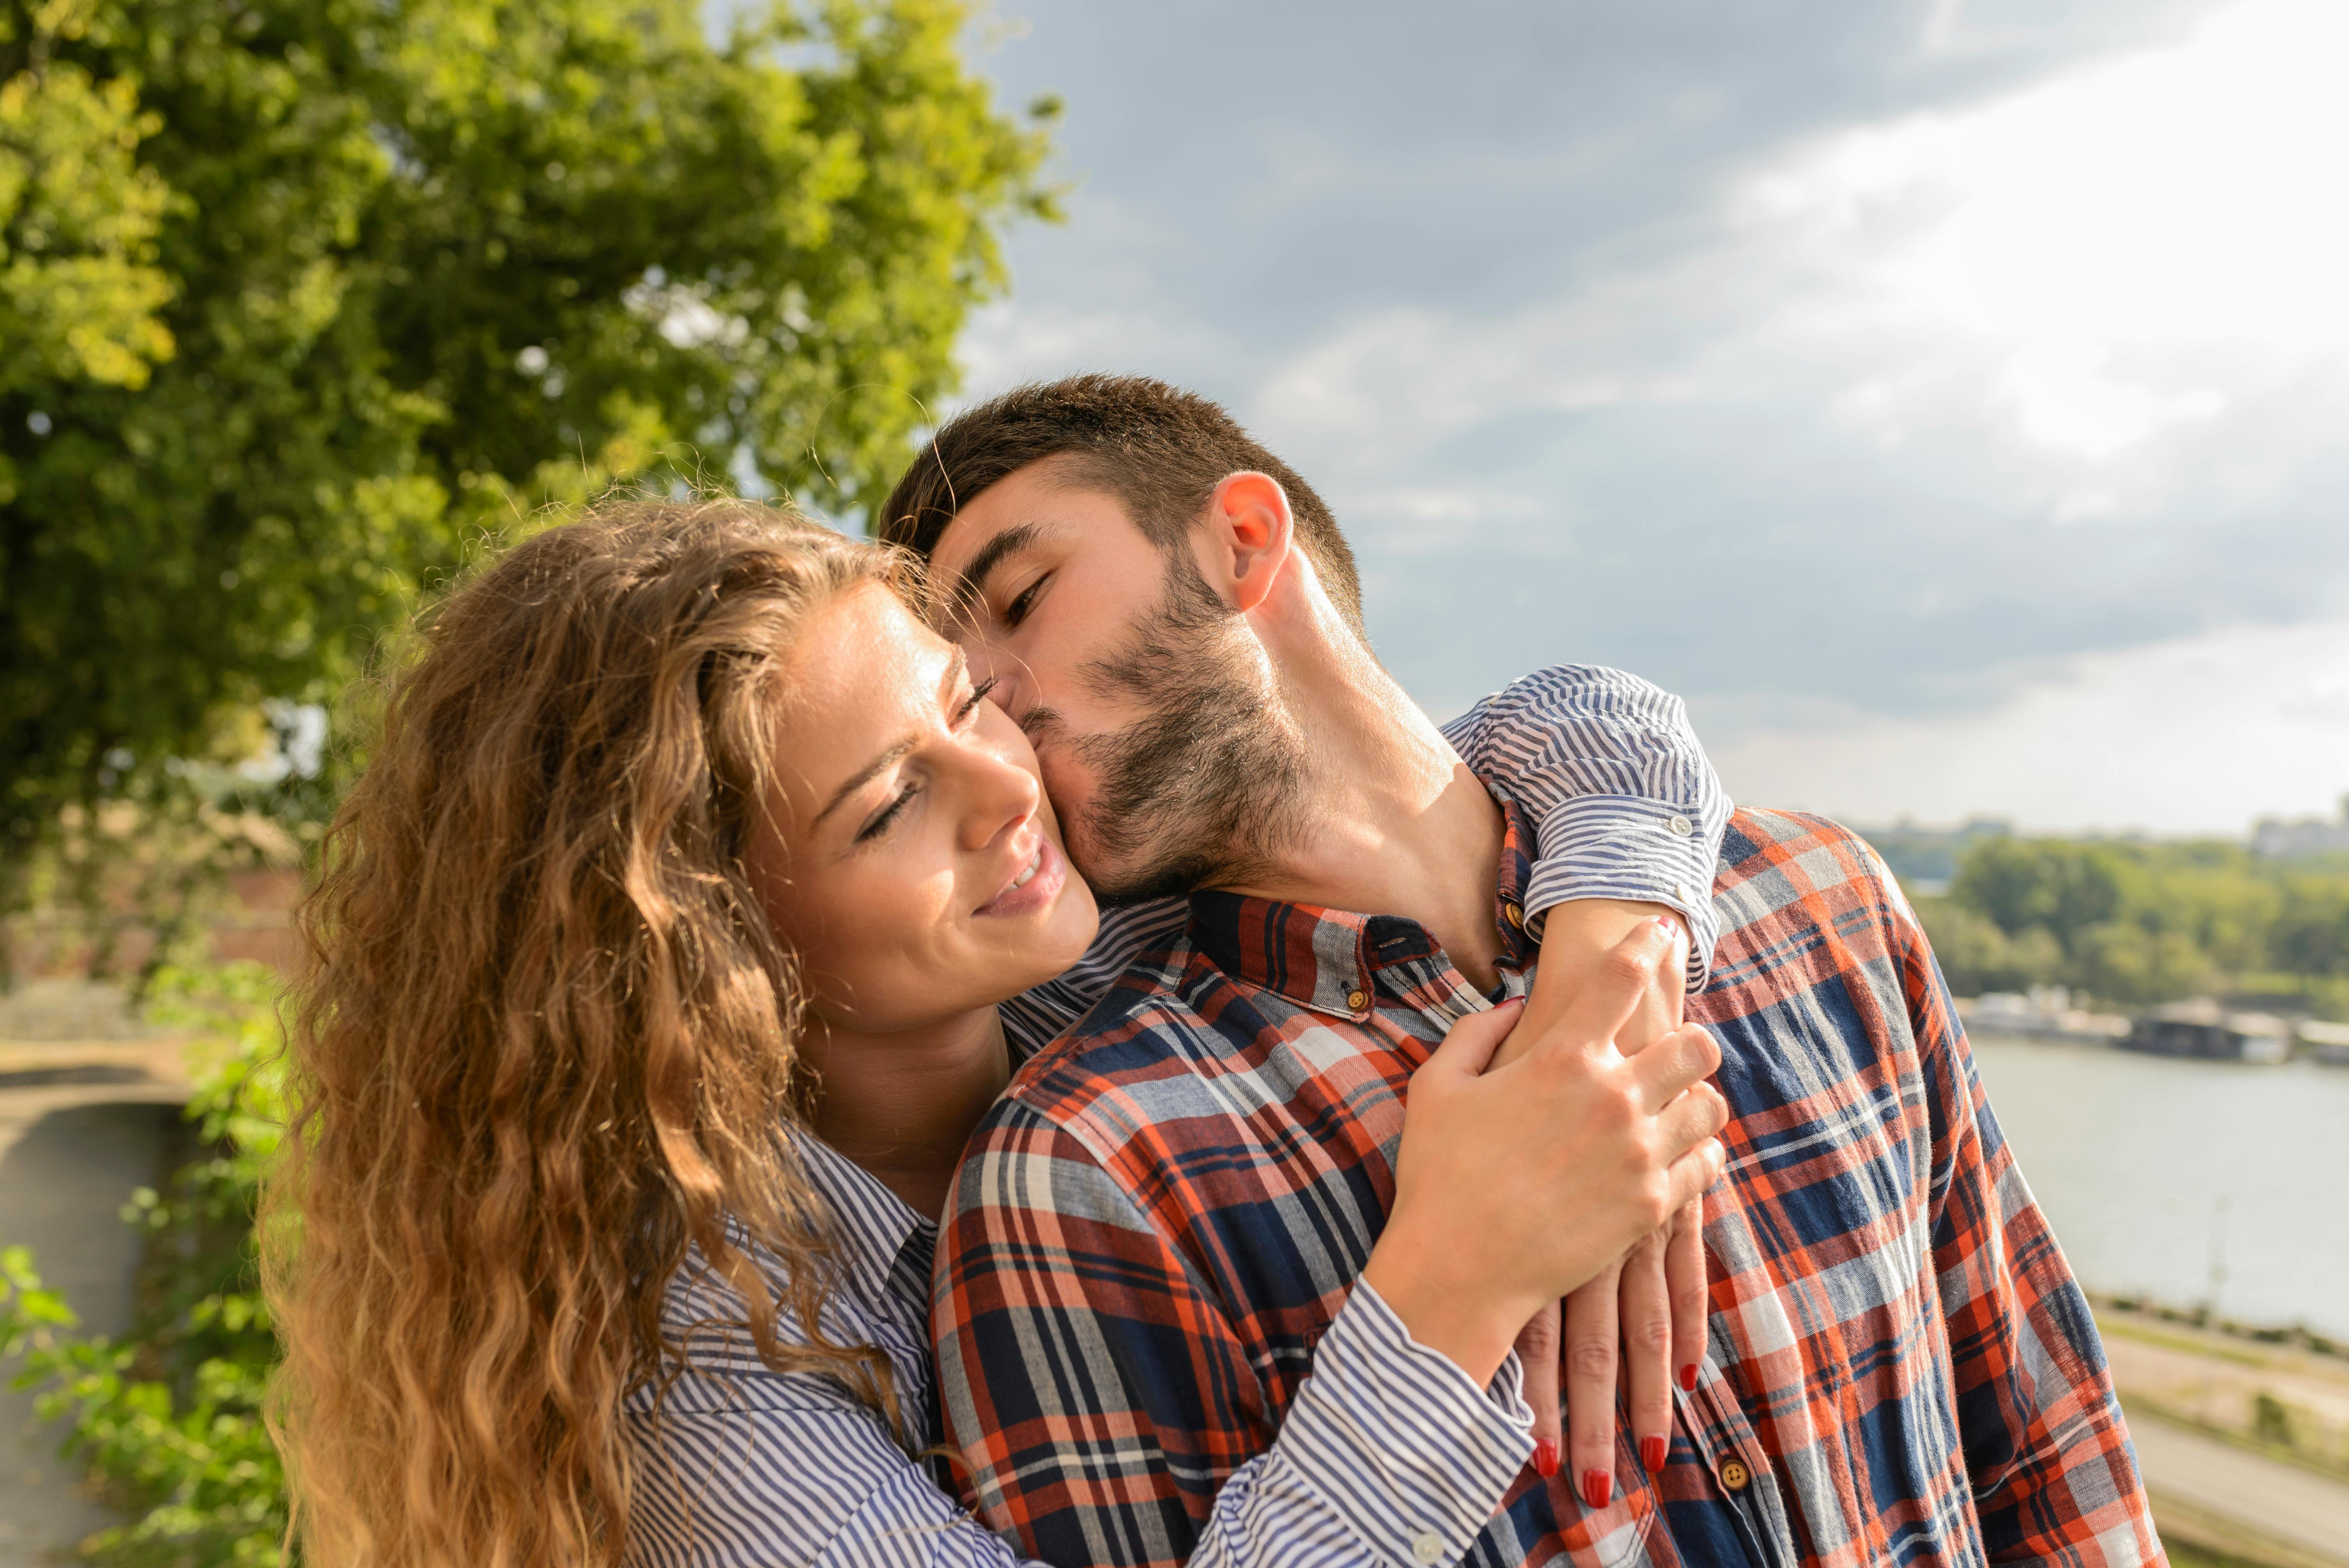 Un homme embrassant une femme sur la joue | Source : Pexels